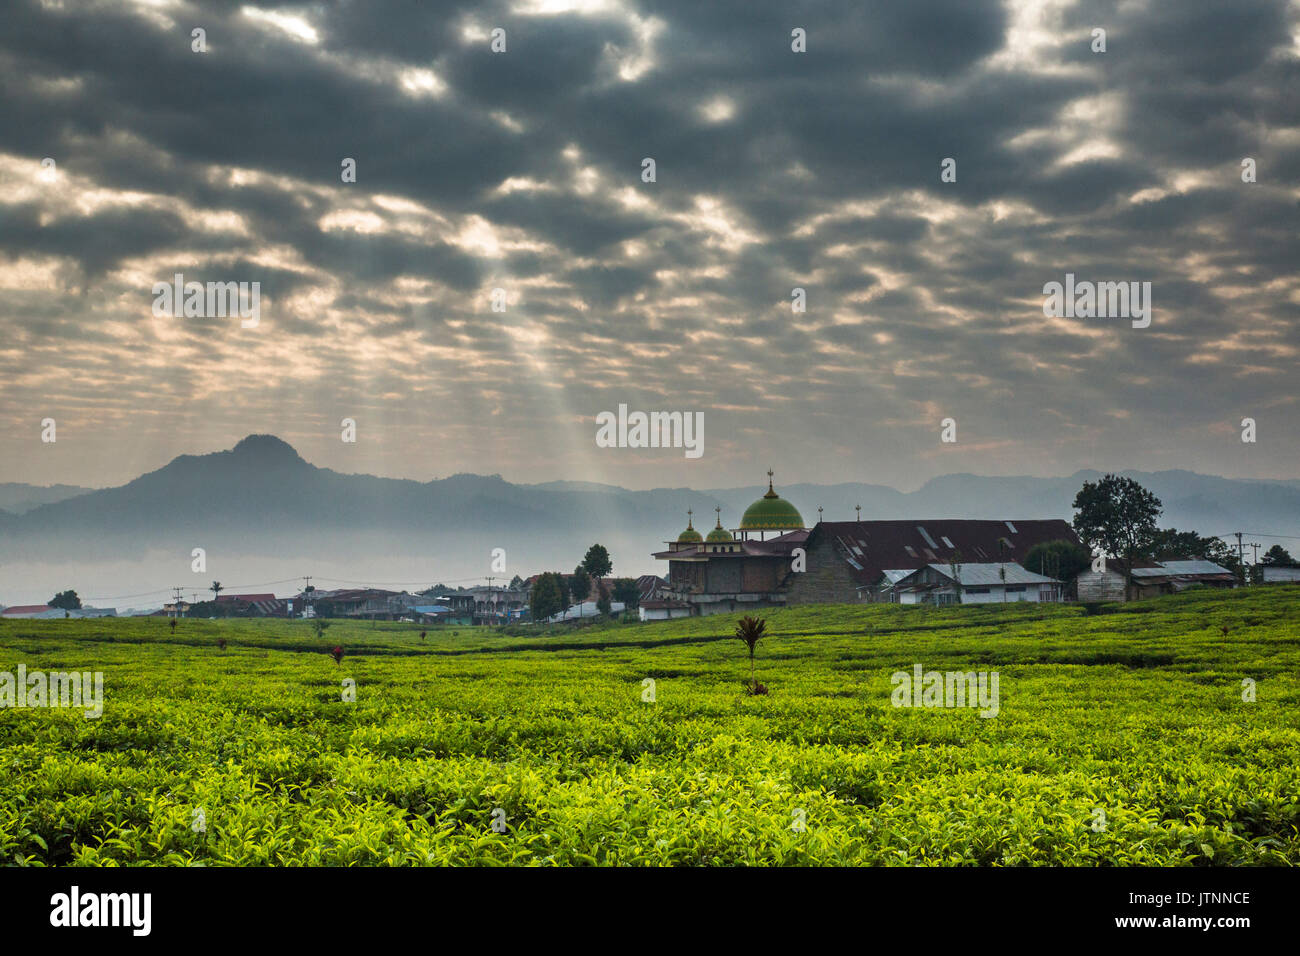 Sonnenlicht strömt durch pocked Wolken über einem riesigen Kaffee Feld mit einer kleinen Stadt und die Moschee und die Berge am Horizont. Kerinci Tal, Sumatra, Indonesien Stockfoto